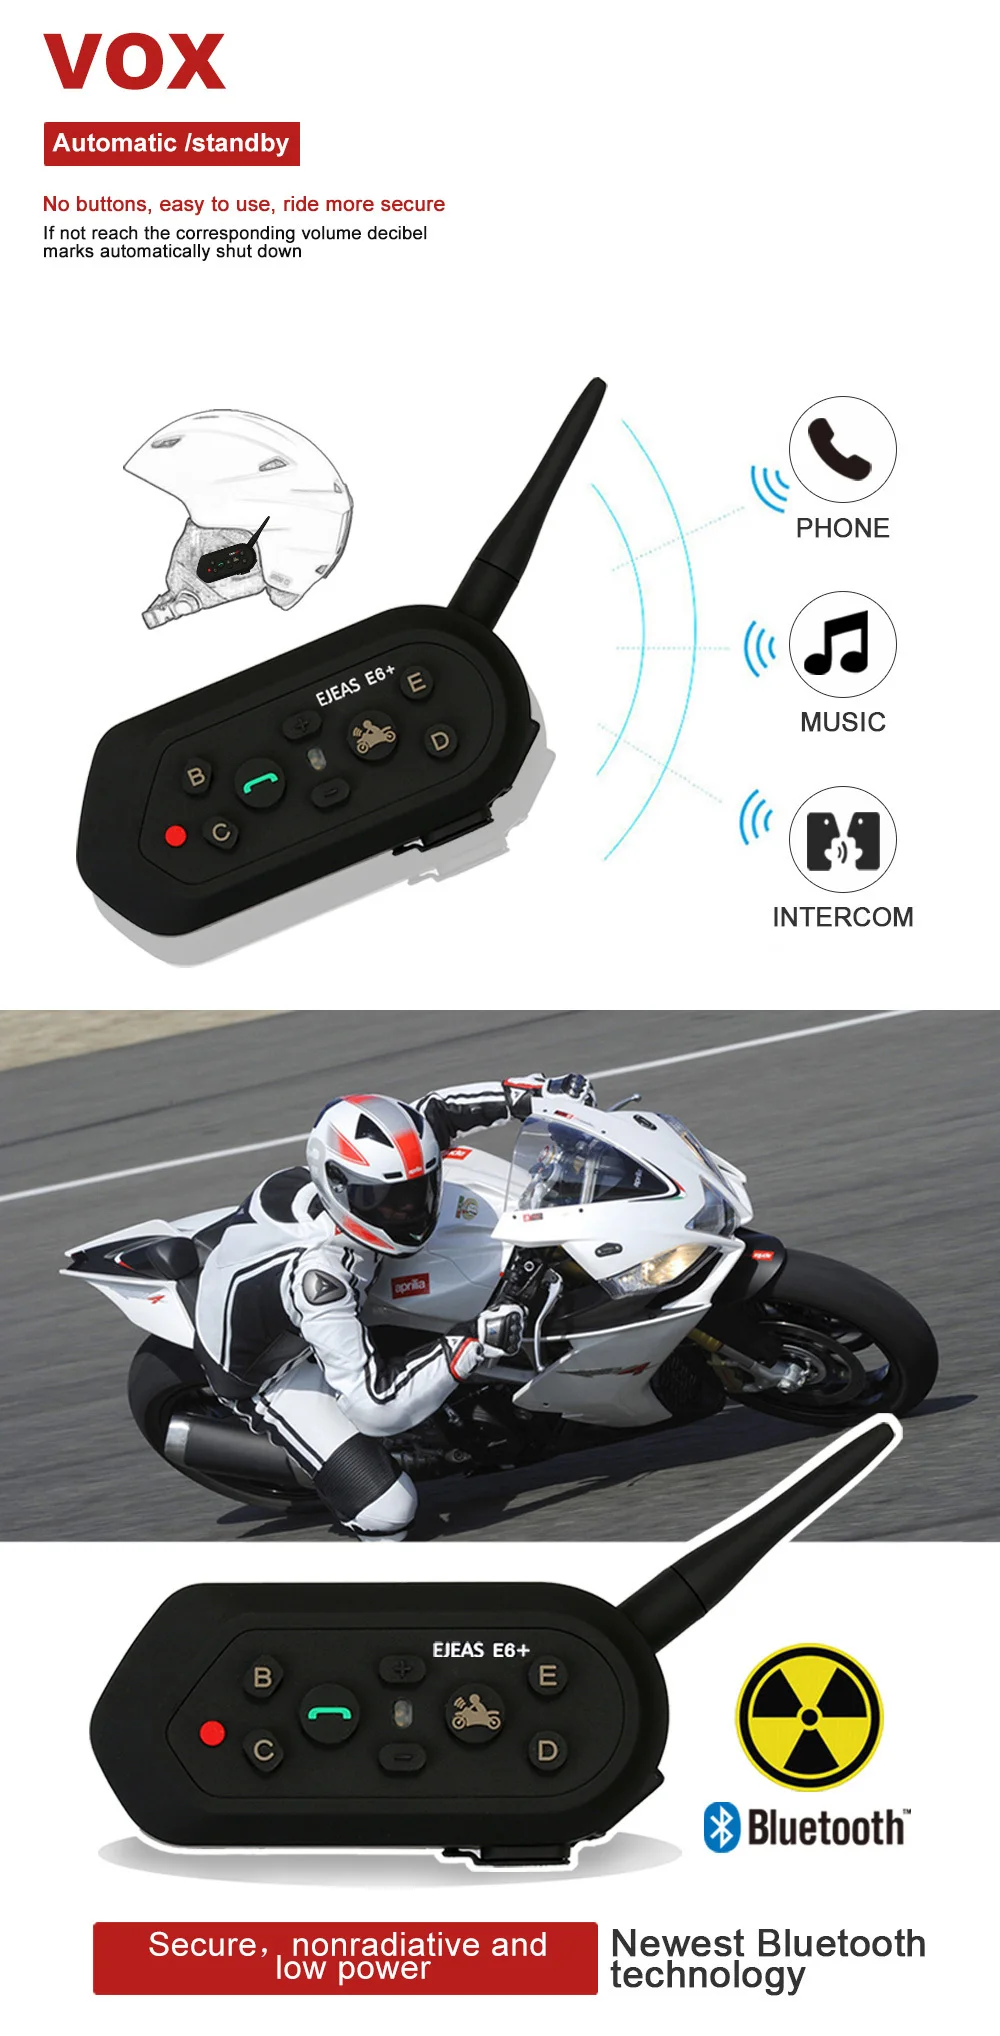 EJEAS E6 Plus мотоциклетный домофон 1200 м коммуникатор Bluetooth Шлем переговорные гарнитуры VOX с пультом дистанционного управления для 6 гонщиков